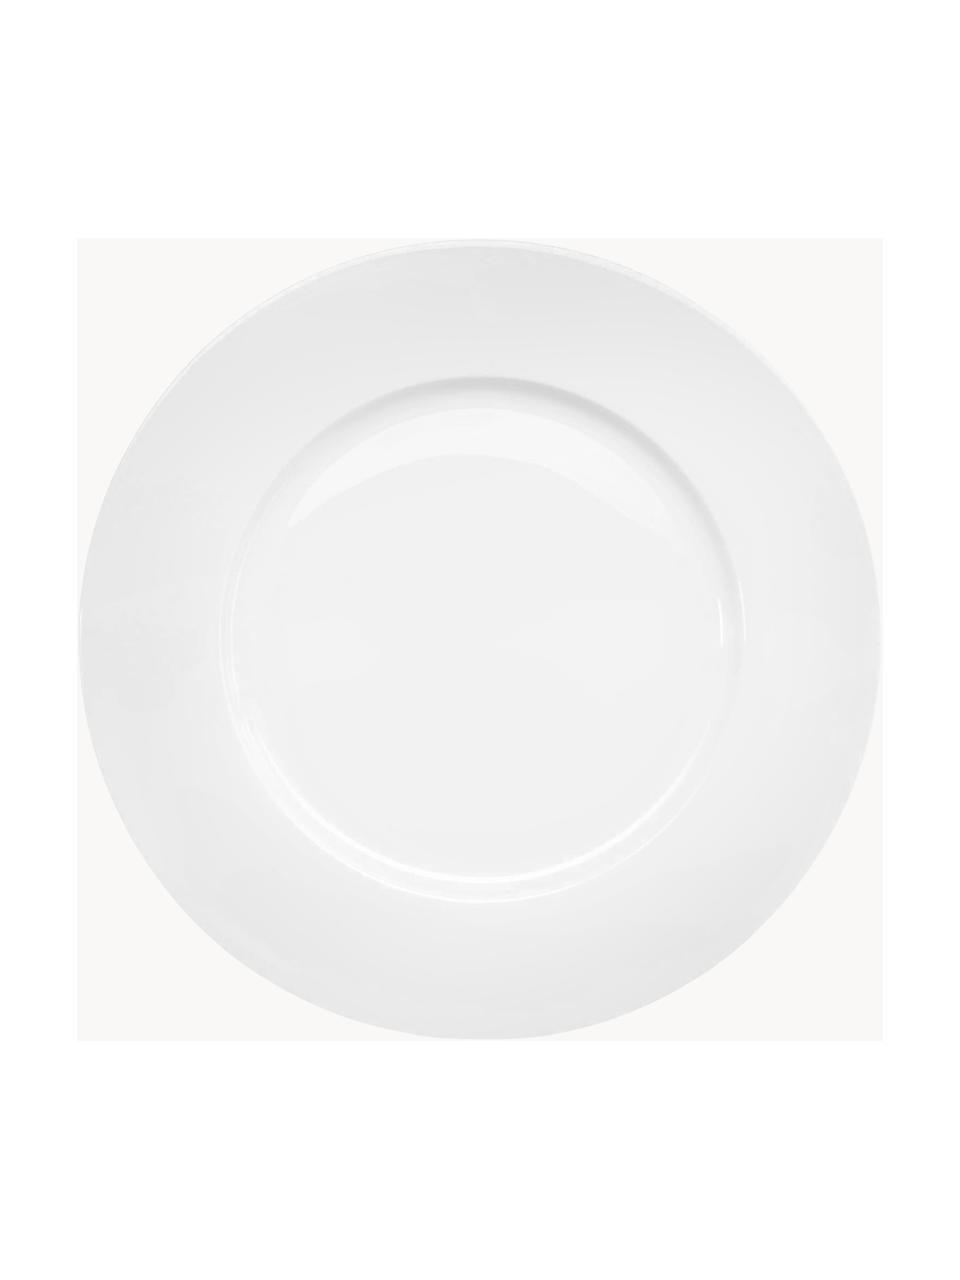 Ontbijtbord à table van beenderporselein, 6 stuks, Beenderporselein (porselein)
Fine Bone China is een zacht porselein, dat zich vooral onderscheidt door zijn briljante, doorschijnende glans., Wit, Ø 24 cm